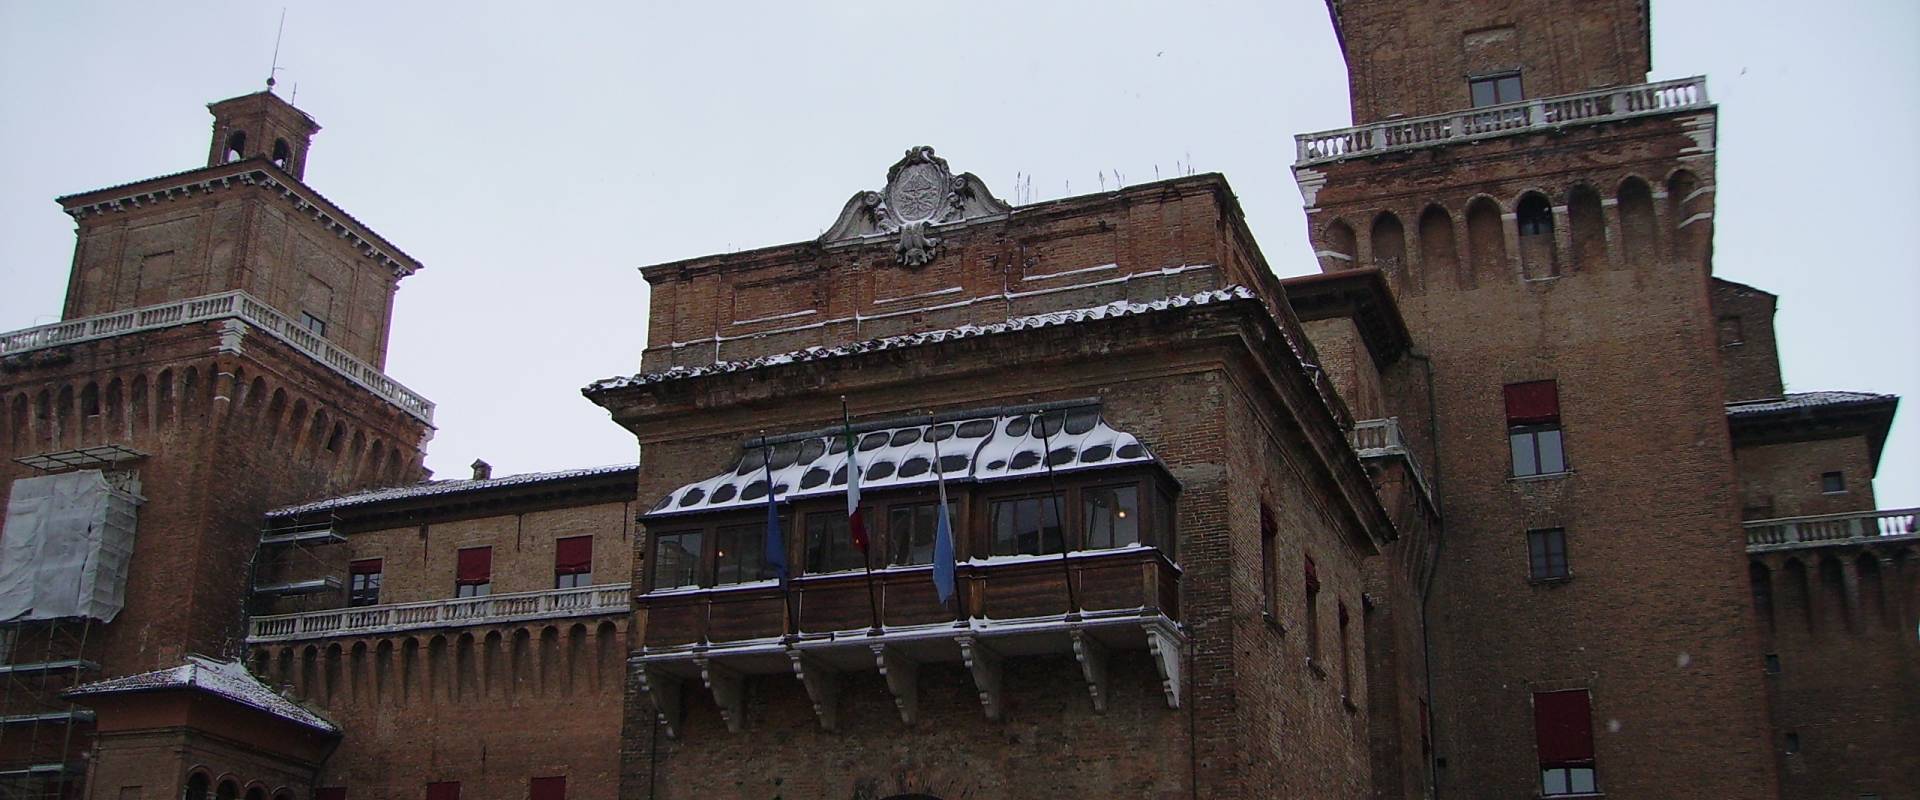 Balcone coperto del Castello Estense innevato photo by Tommaso Trombetta